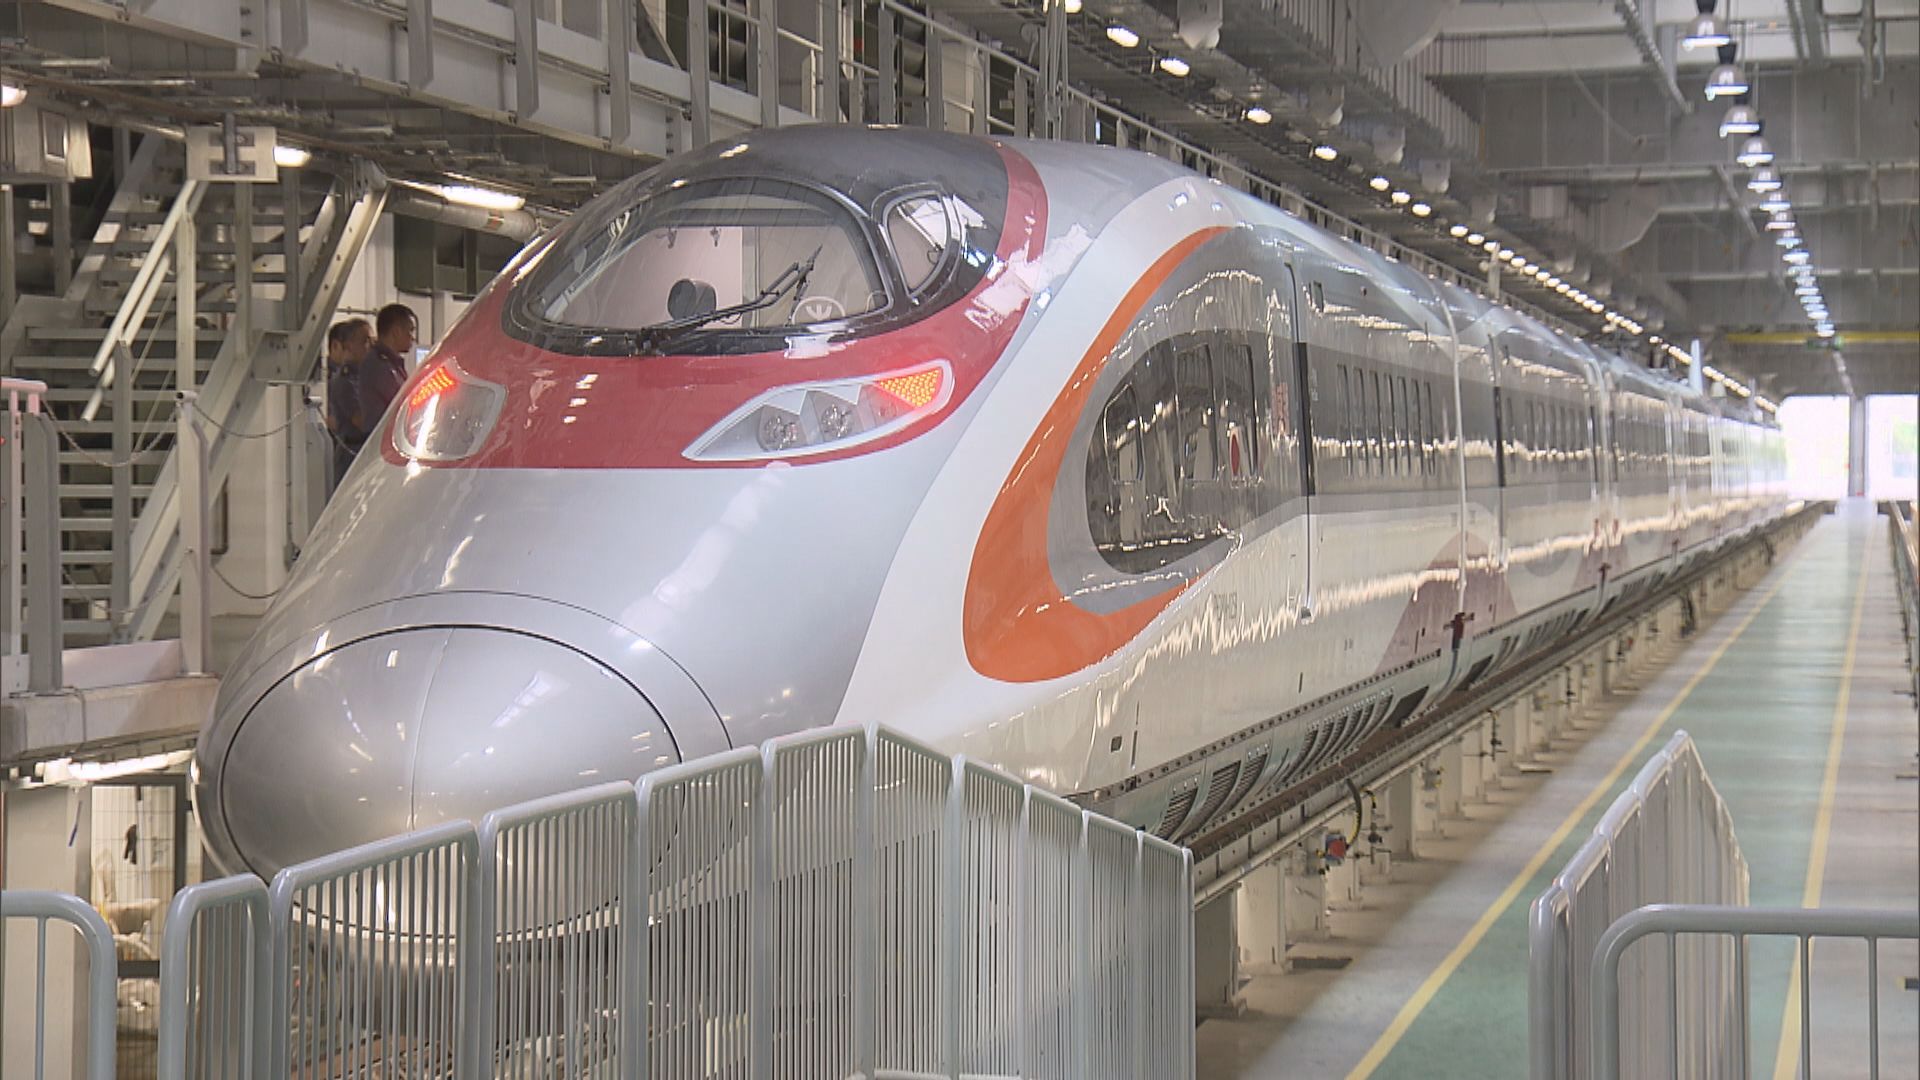 旅遊業稱京港高鐵動臥列車受歡迎 促加密班次規劃鐵路遊